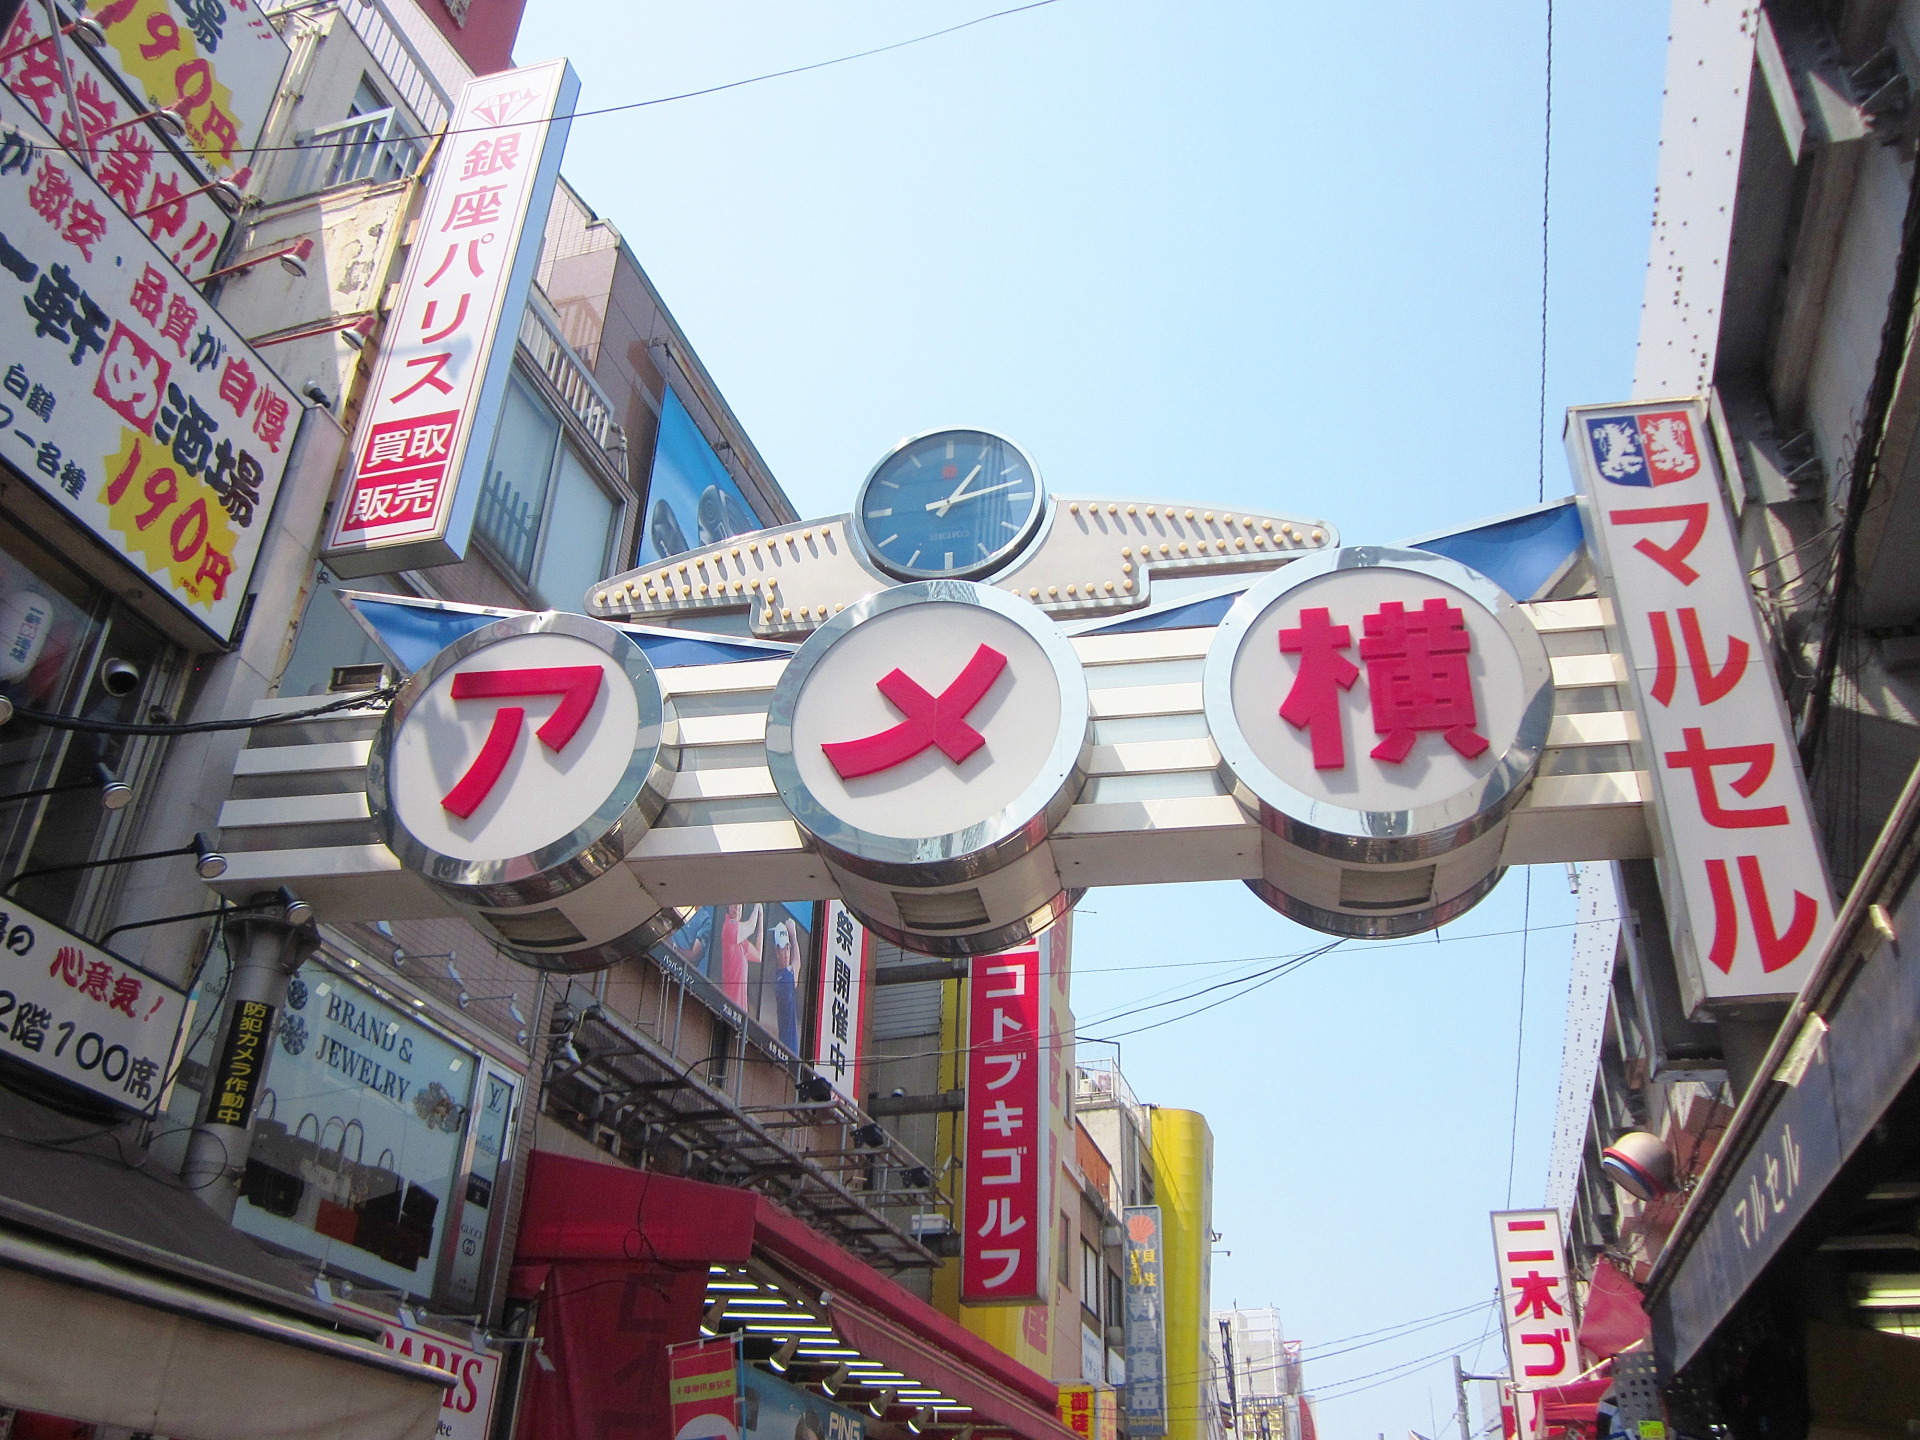 上野のショッピング 買い物おすすめスポット11選 アメ横や駅ビルの人気店も Travelnote トラベルノート